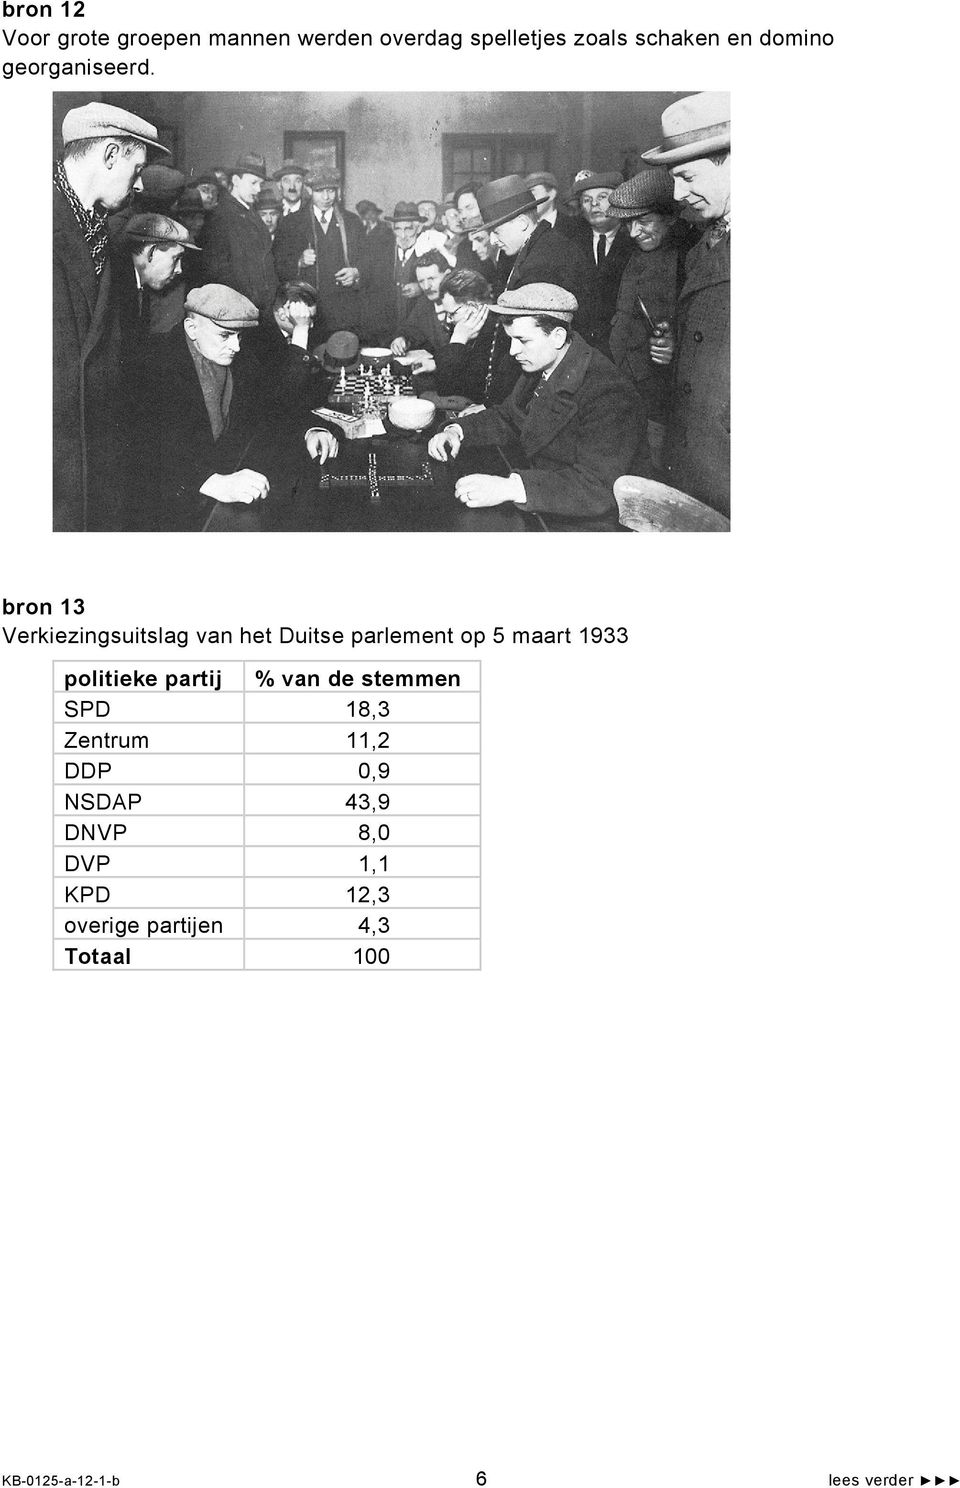 bron 13 Verkiezingsuitslag van het Duitse parlement op 5 maart 1933 politieke